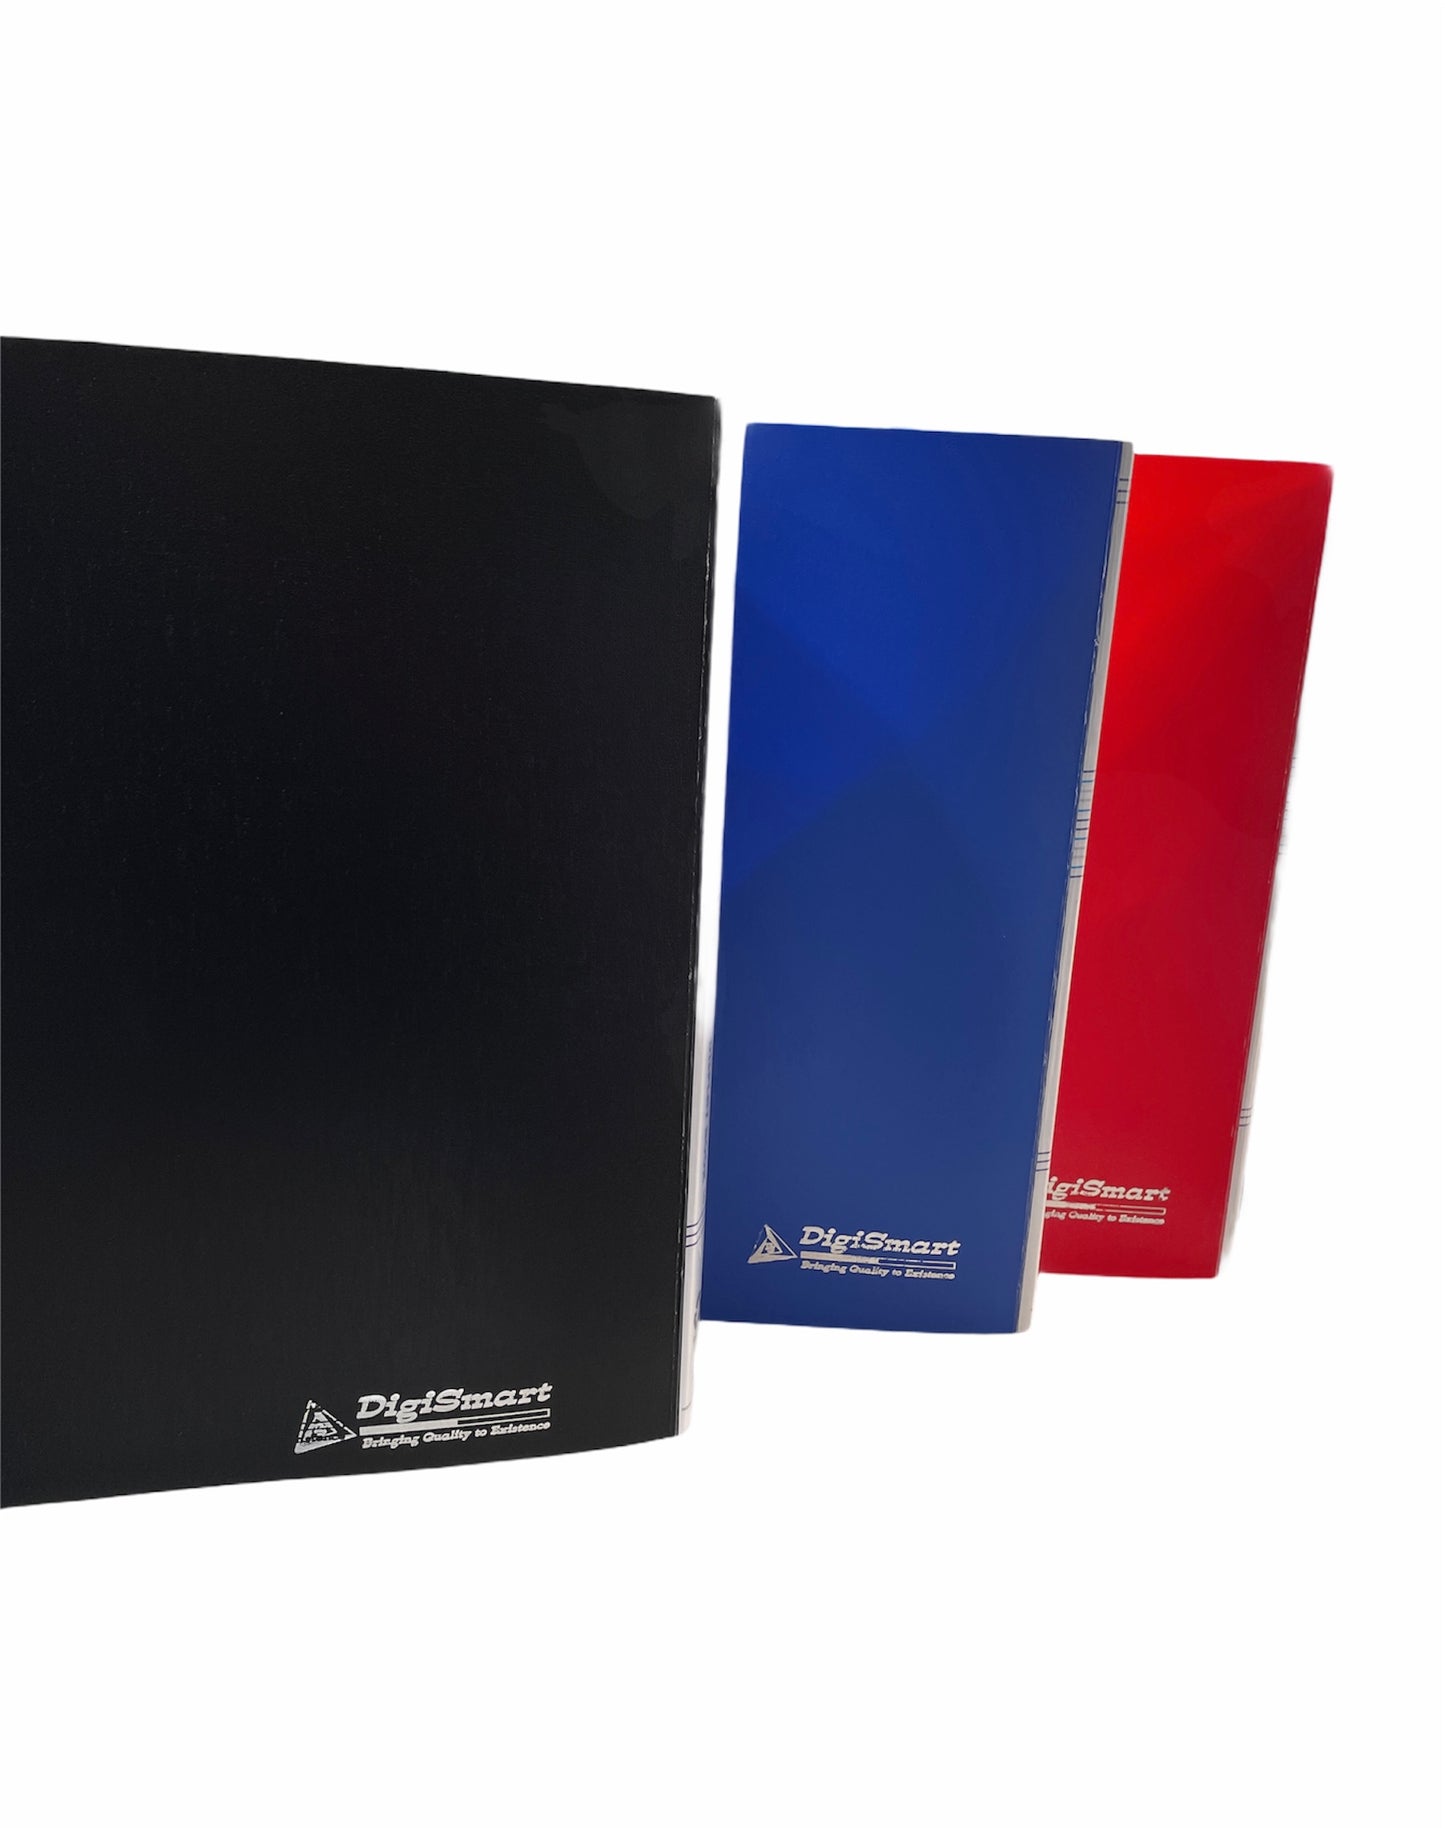 Digismart Display File | Leaves File | Best for A4 Size Paper | 100 Pockets Folder | Dark Blue